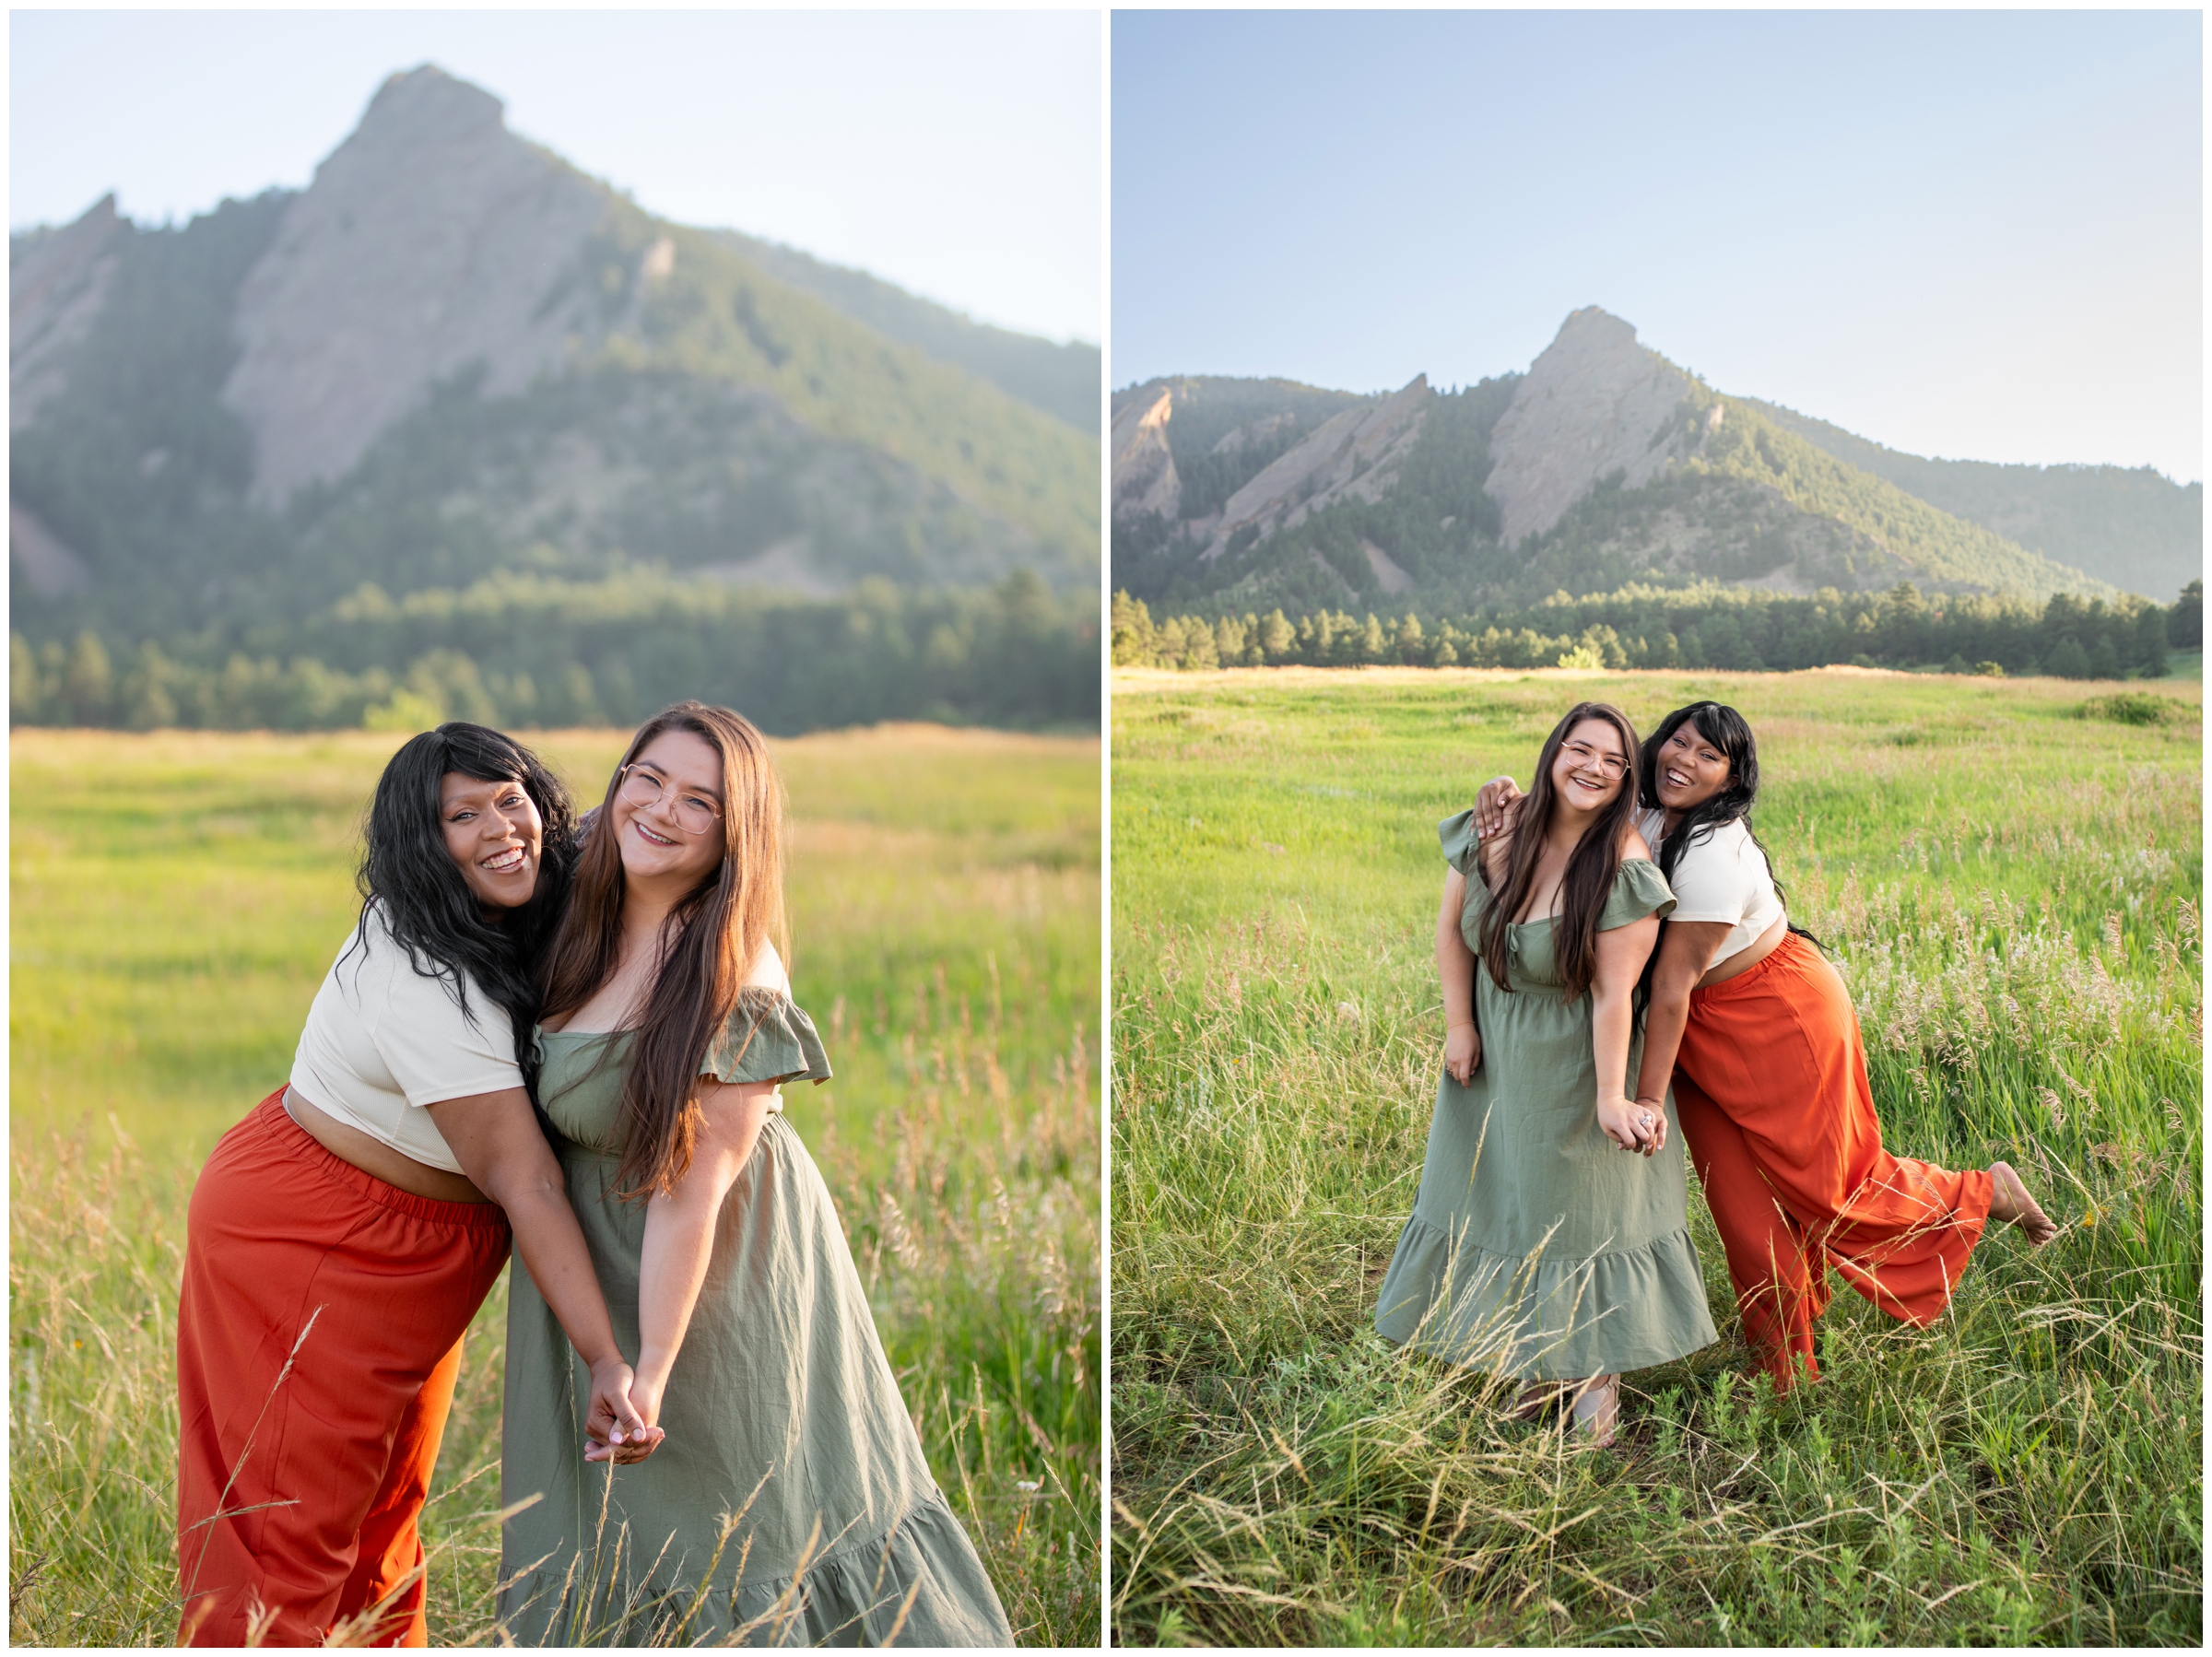 adult women best friends portrait photography session at Chautauqua by Boulder photographer Plum Pretty Photography 